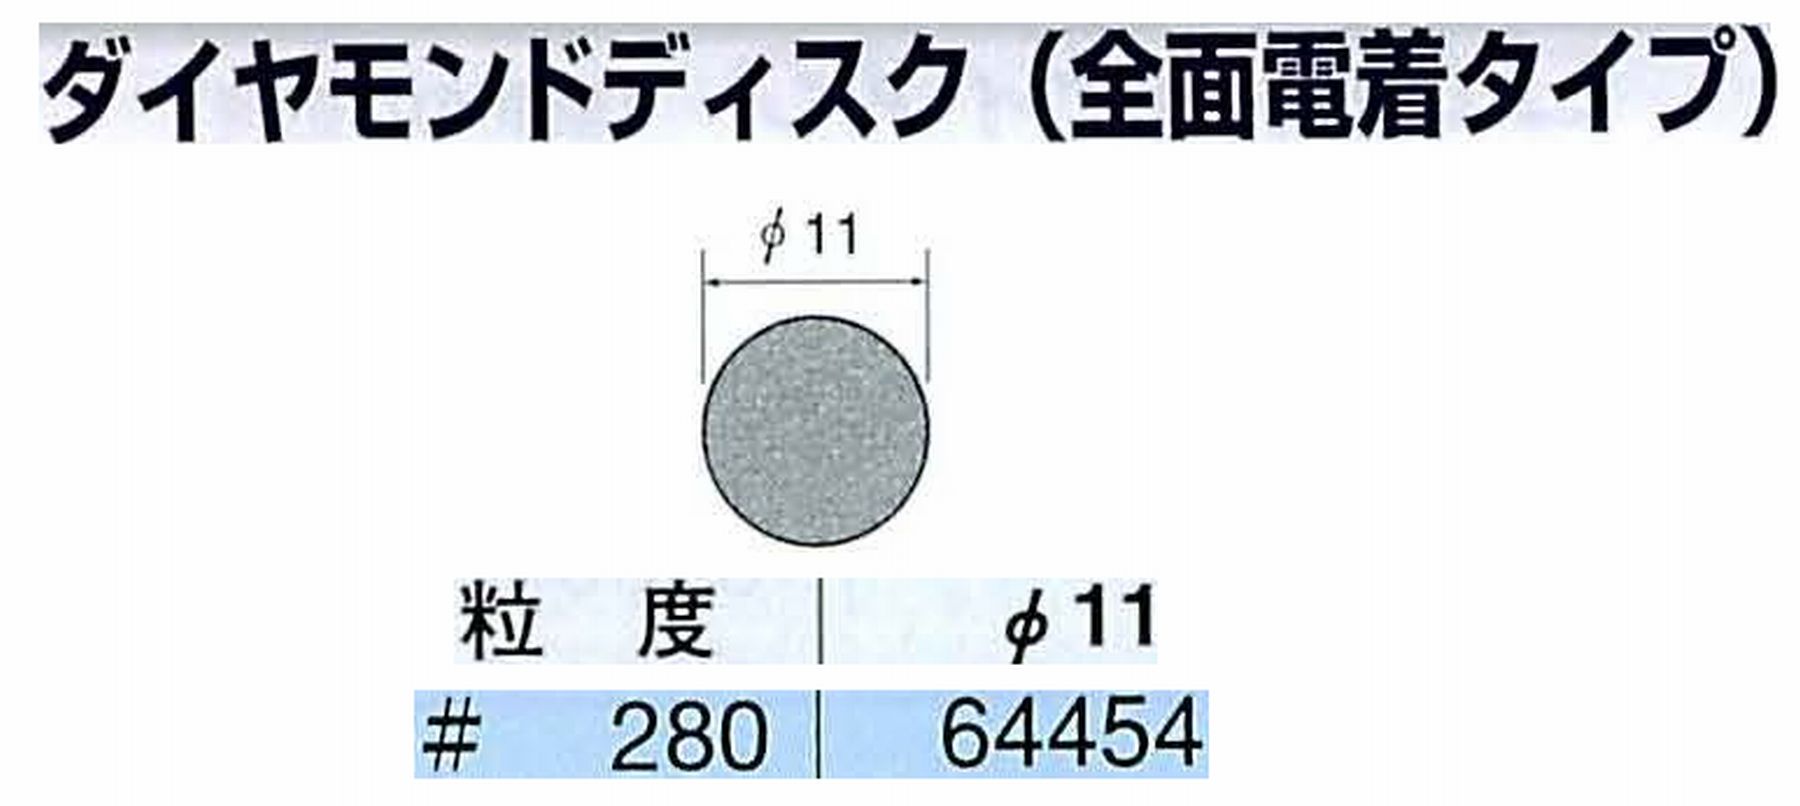 ナカニシ/NAKANISHI アングルグラインダ(電動・エアー) アングルアタッチメント専用工具 ダイヤモンドディスク(全面電着タイプ) 64454